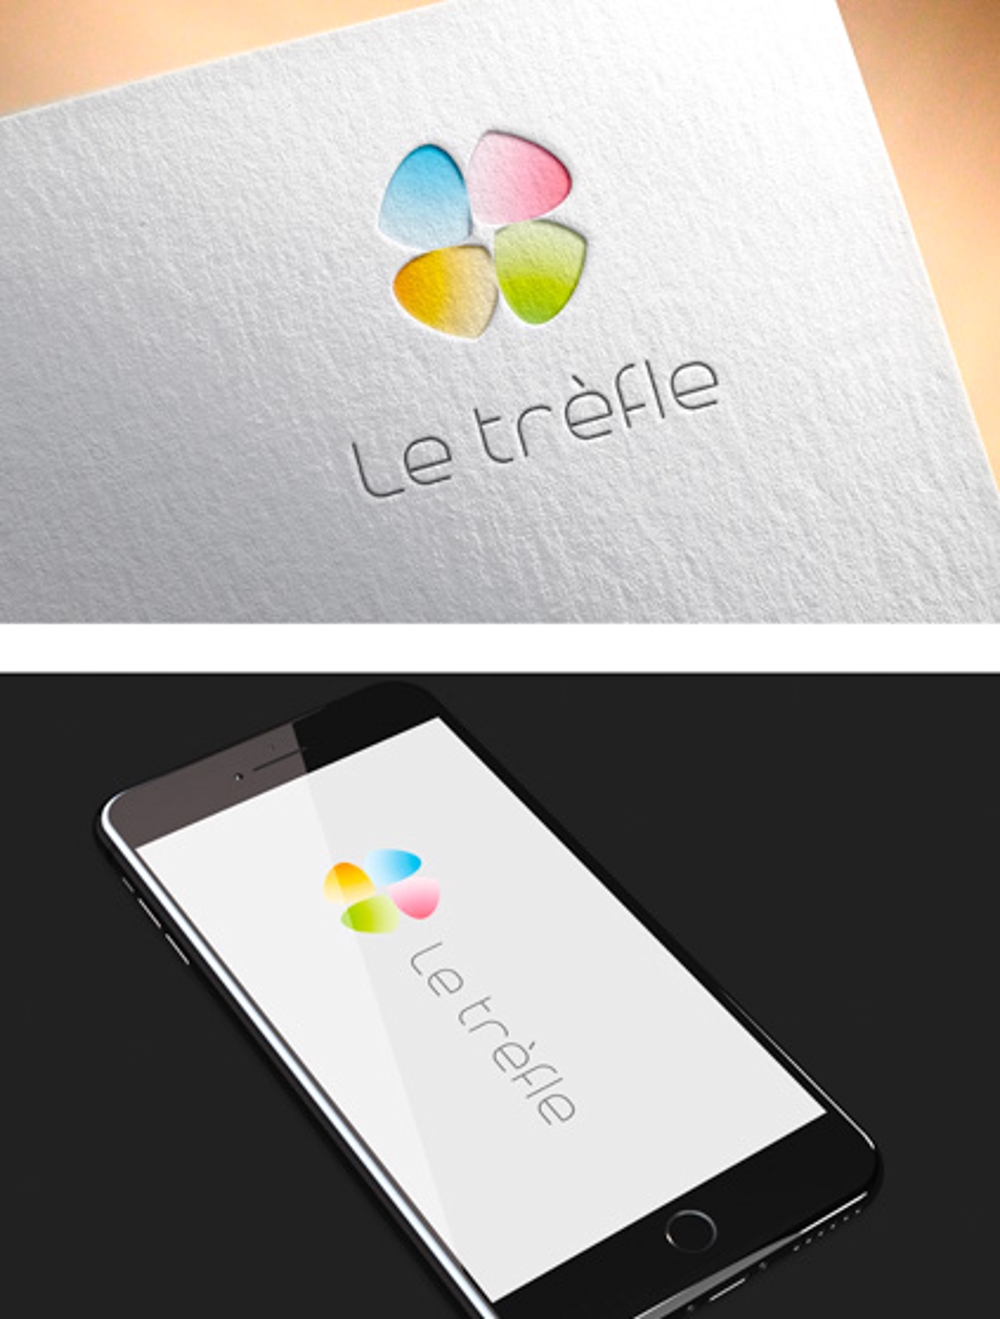 カウンセリングサイト「Le trèfle（ル・トレッフル）」のロゴ